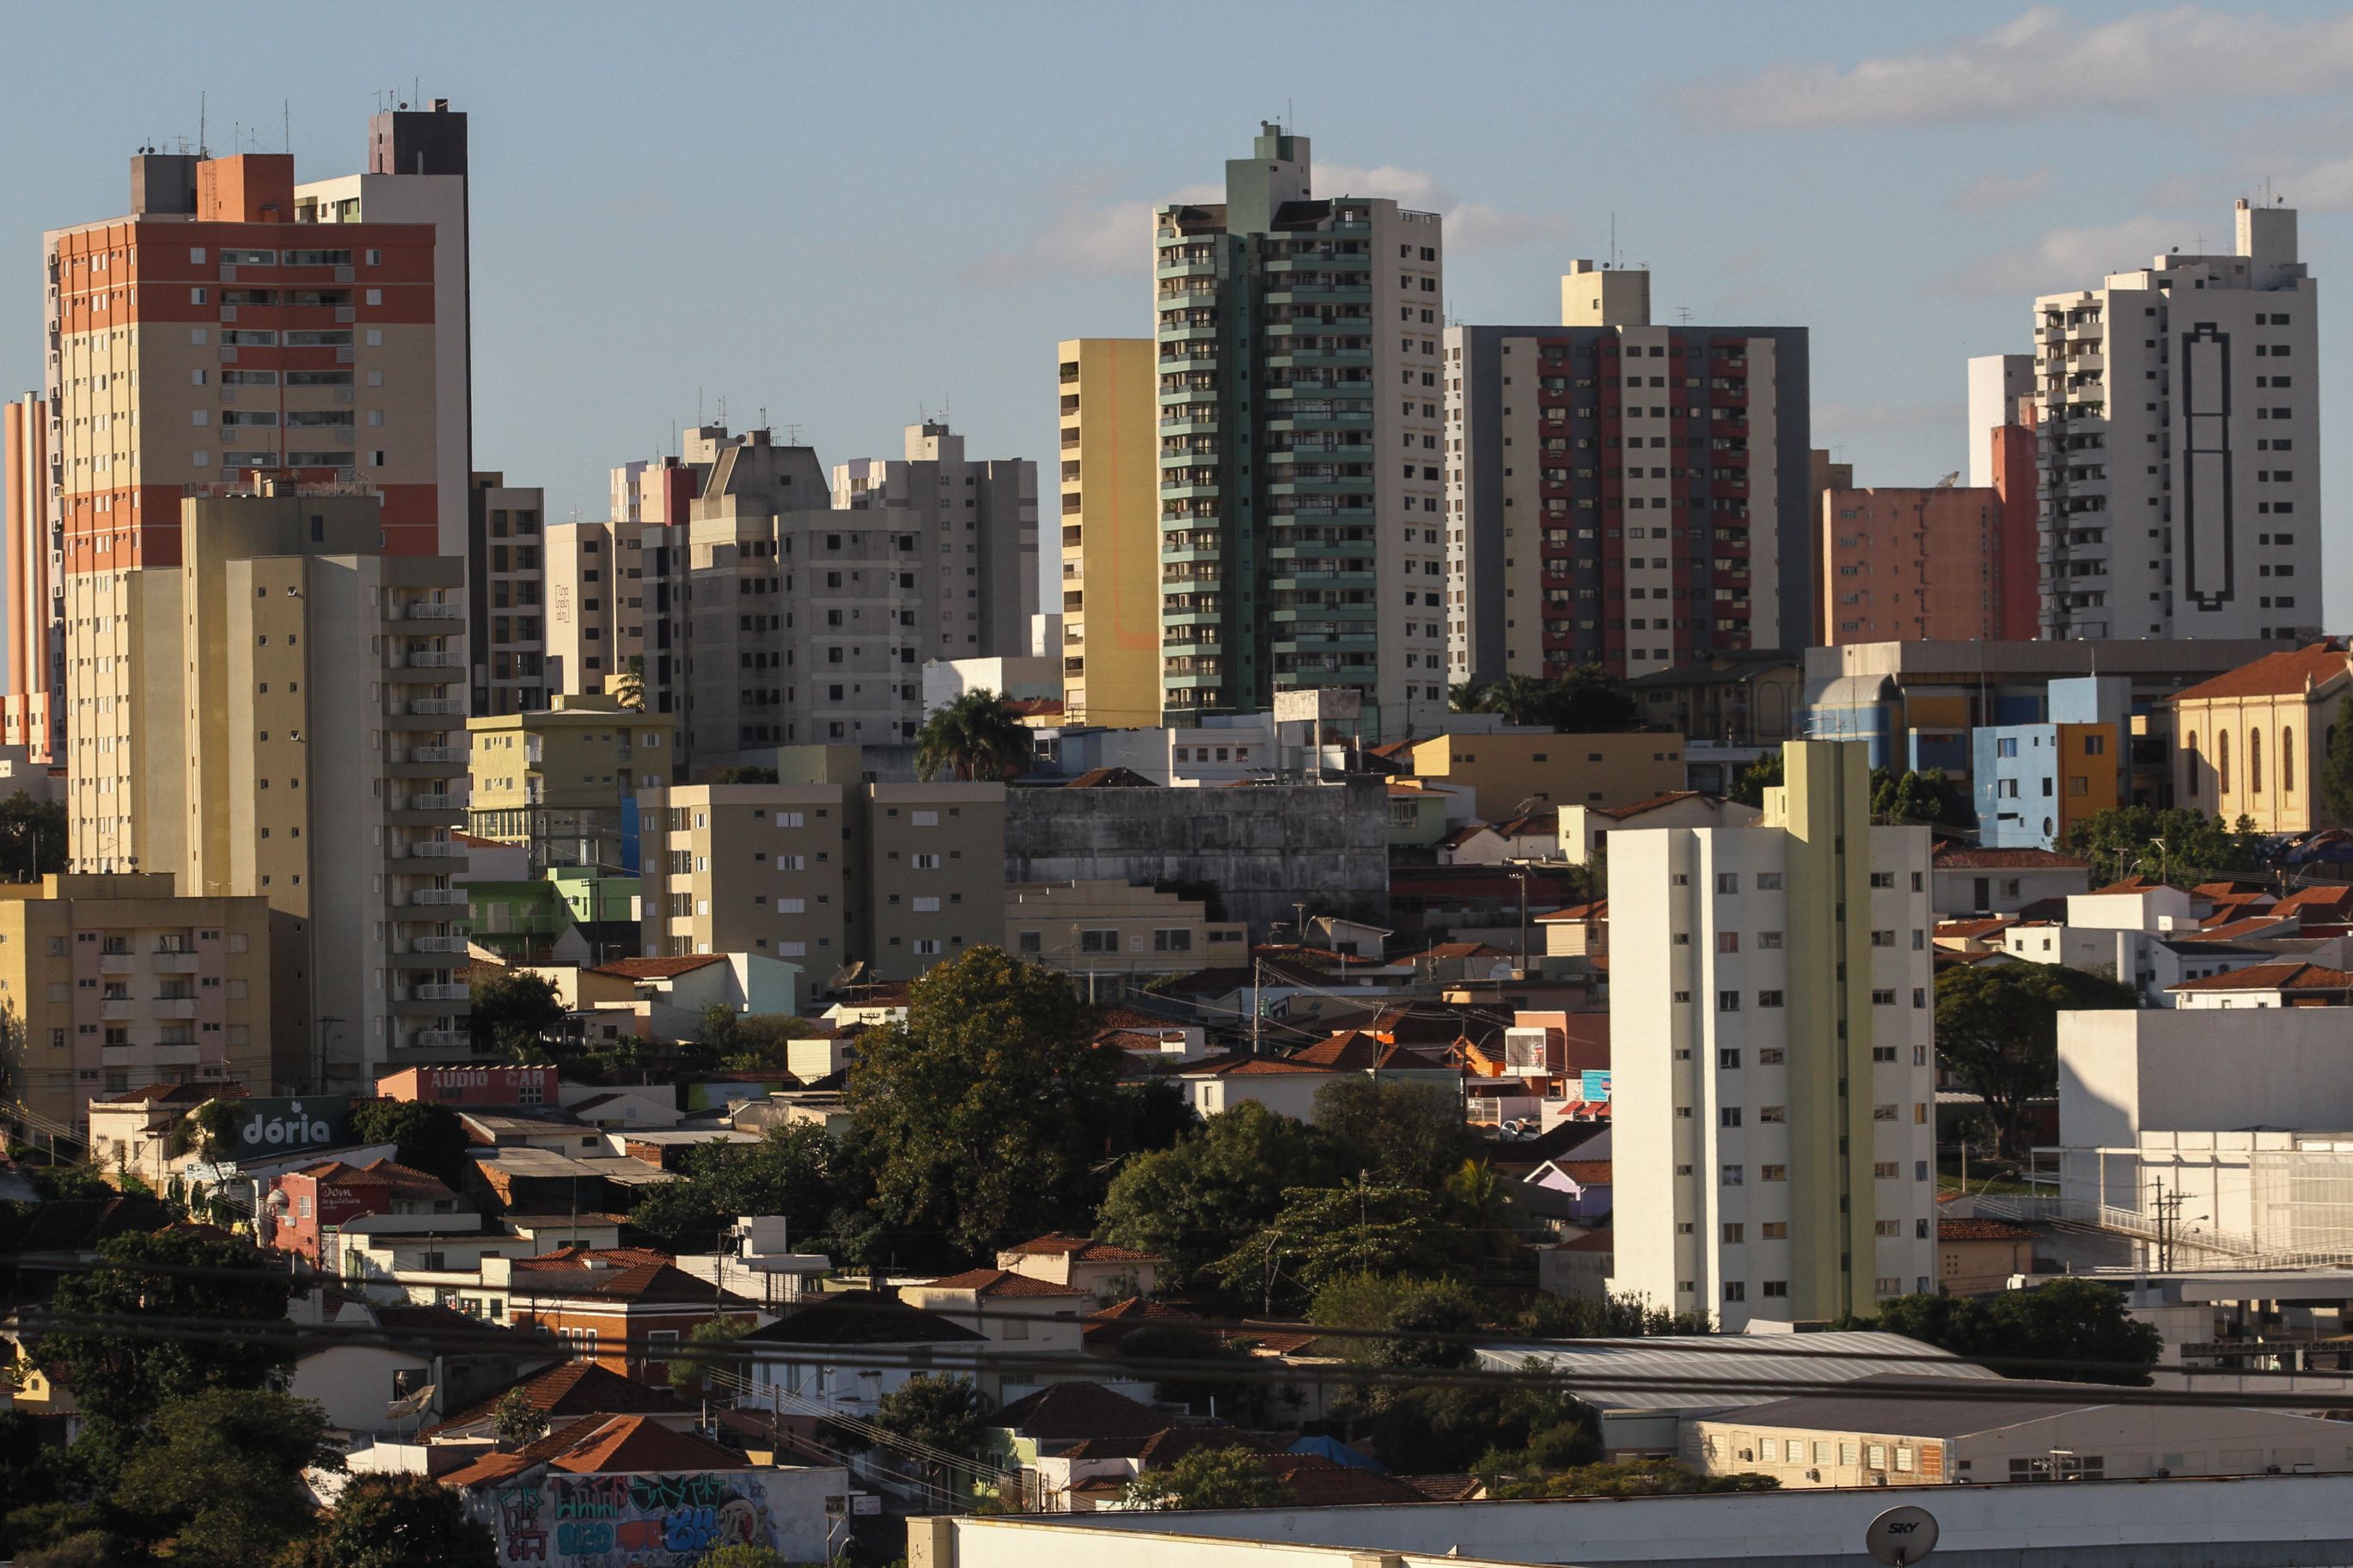 Paisagem urbana de São Carlos, com diversos prédios e moradias.